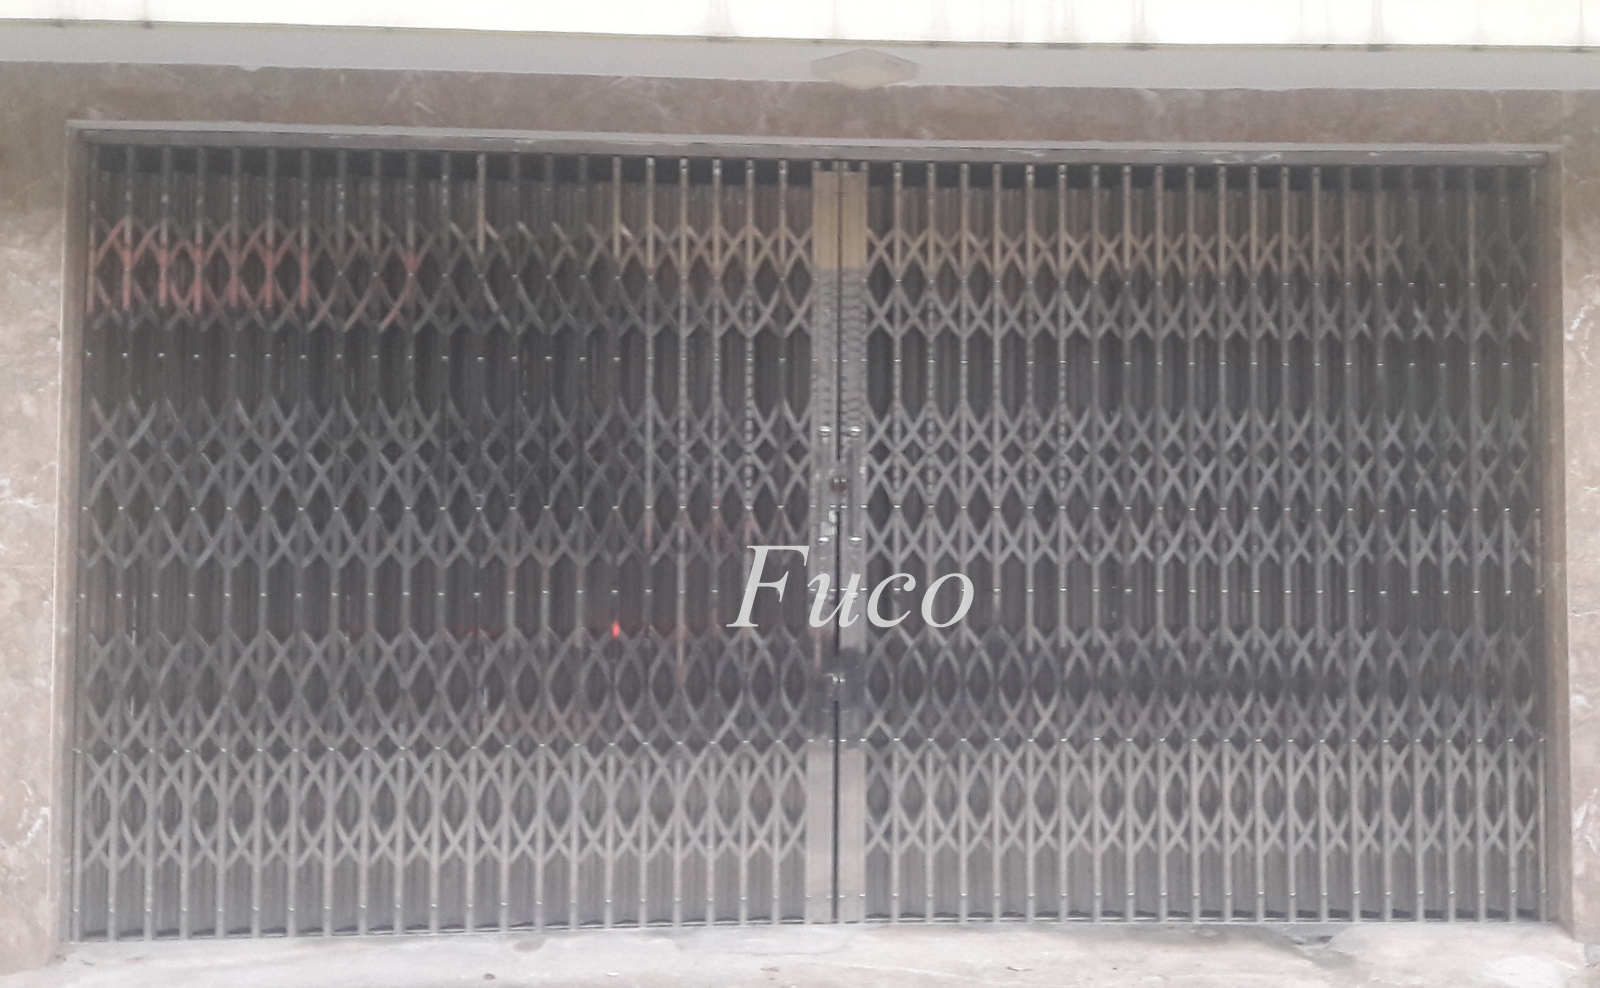 Cửa xếp hộp INOX được sản xuất bởi thợ cơ khí Nam Định